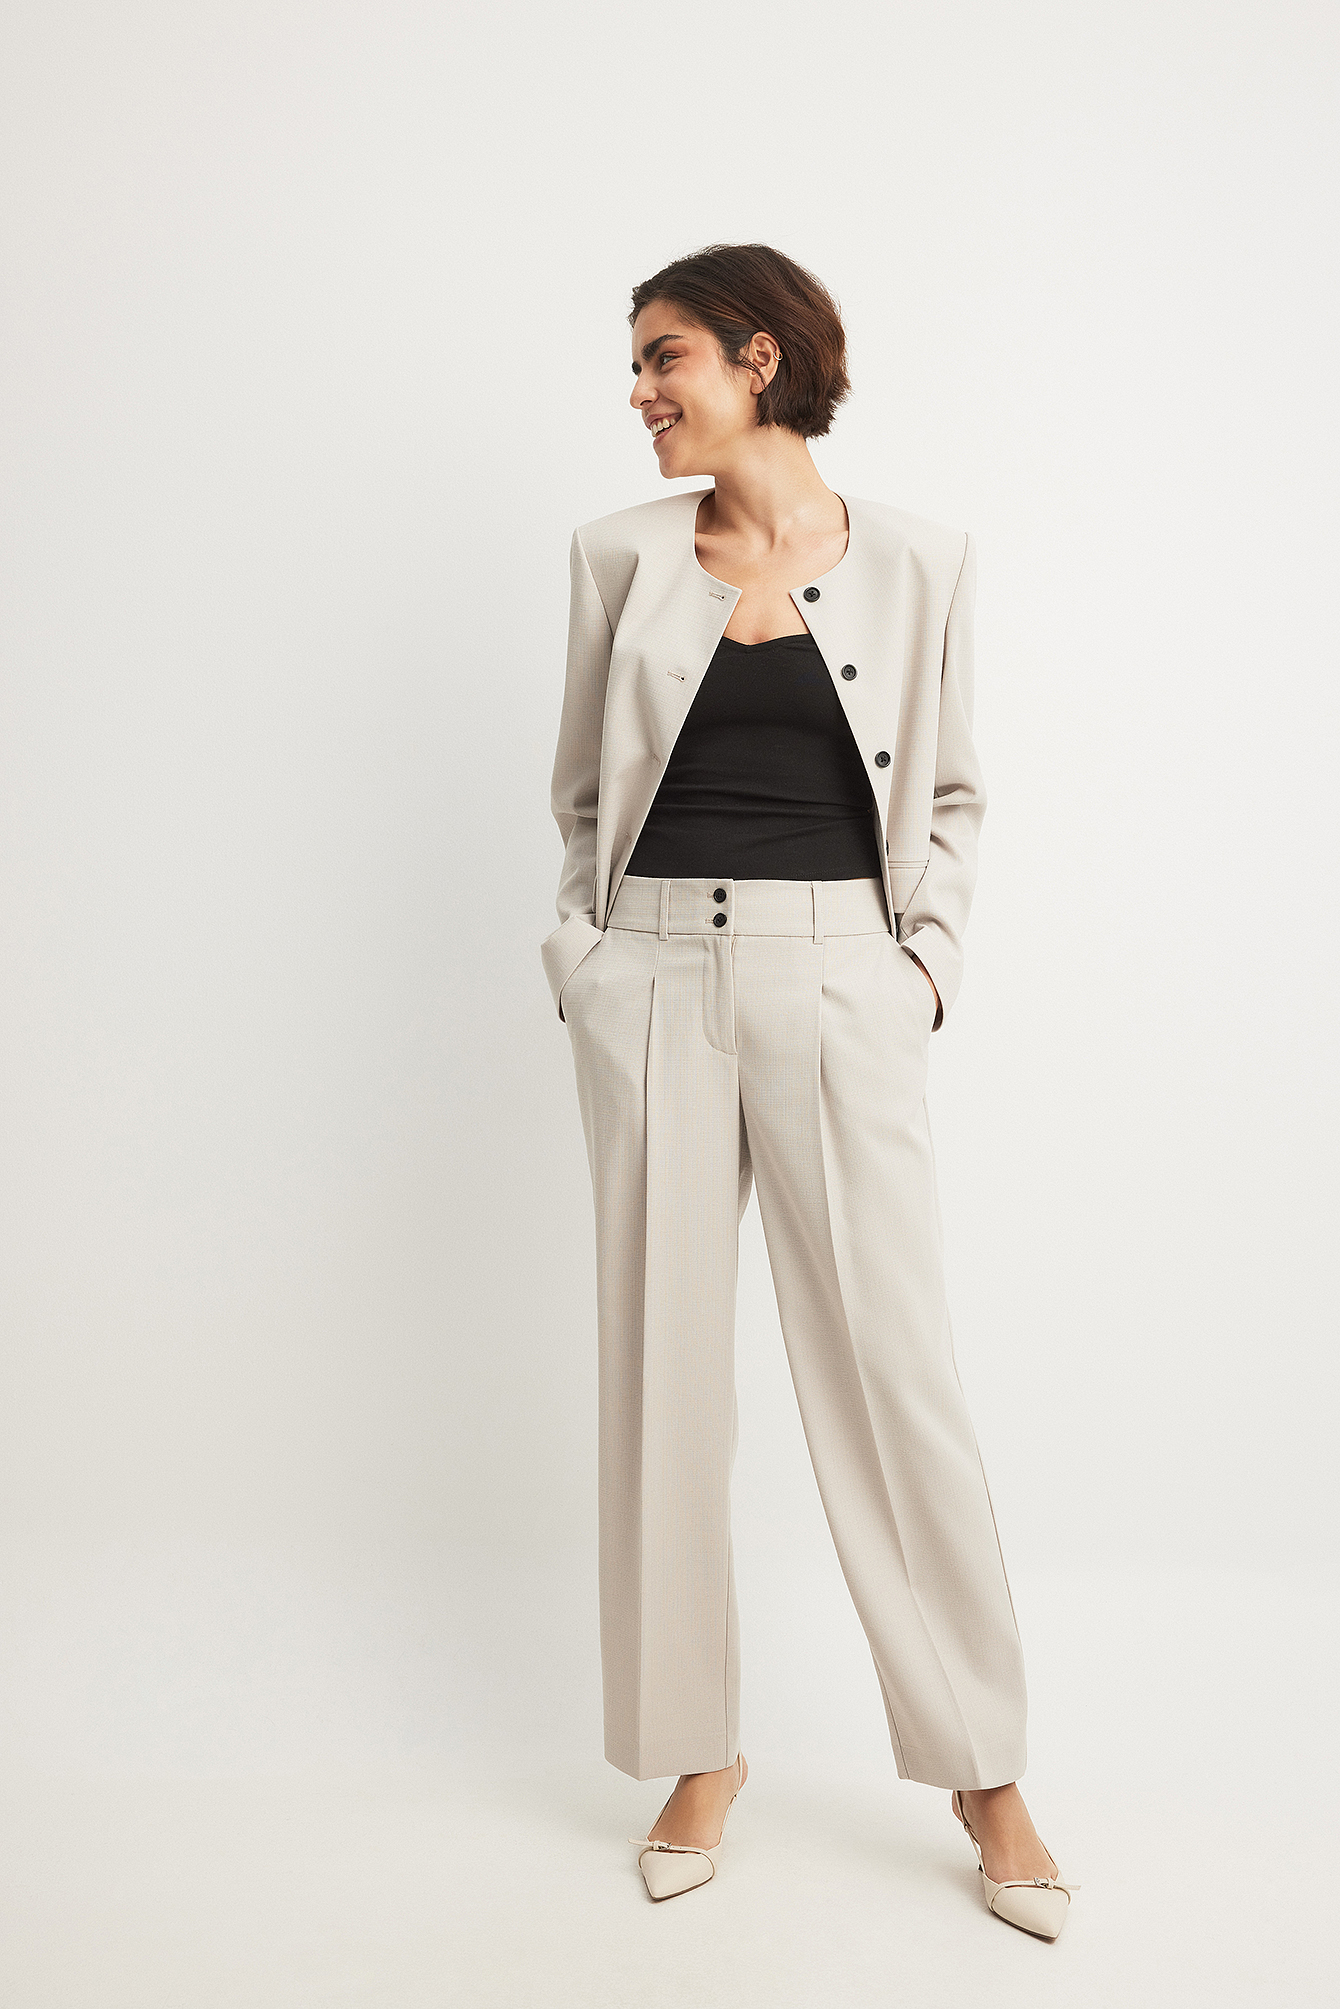 Beige Oversized Pantsuit for Women, Beige Formal Pants Suit for Business  Women, Formal Pantsuit for Women in Men's Style -  Finland